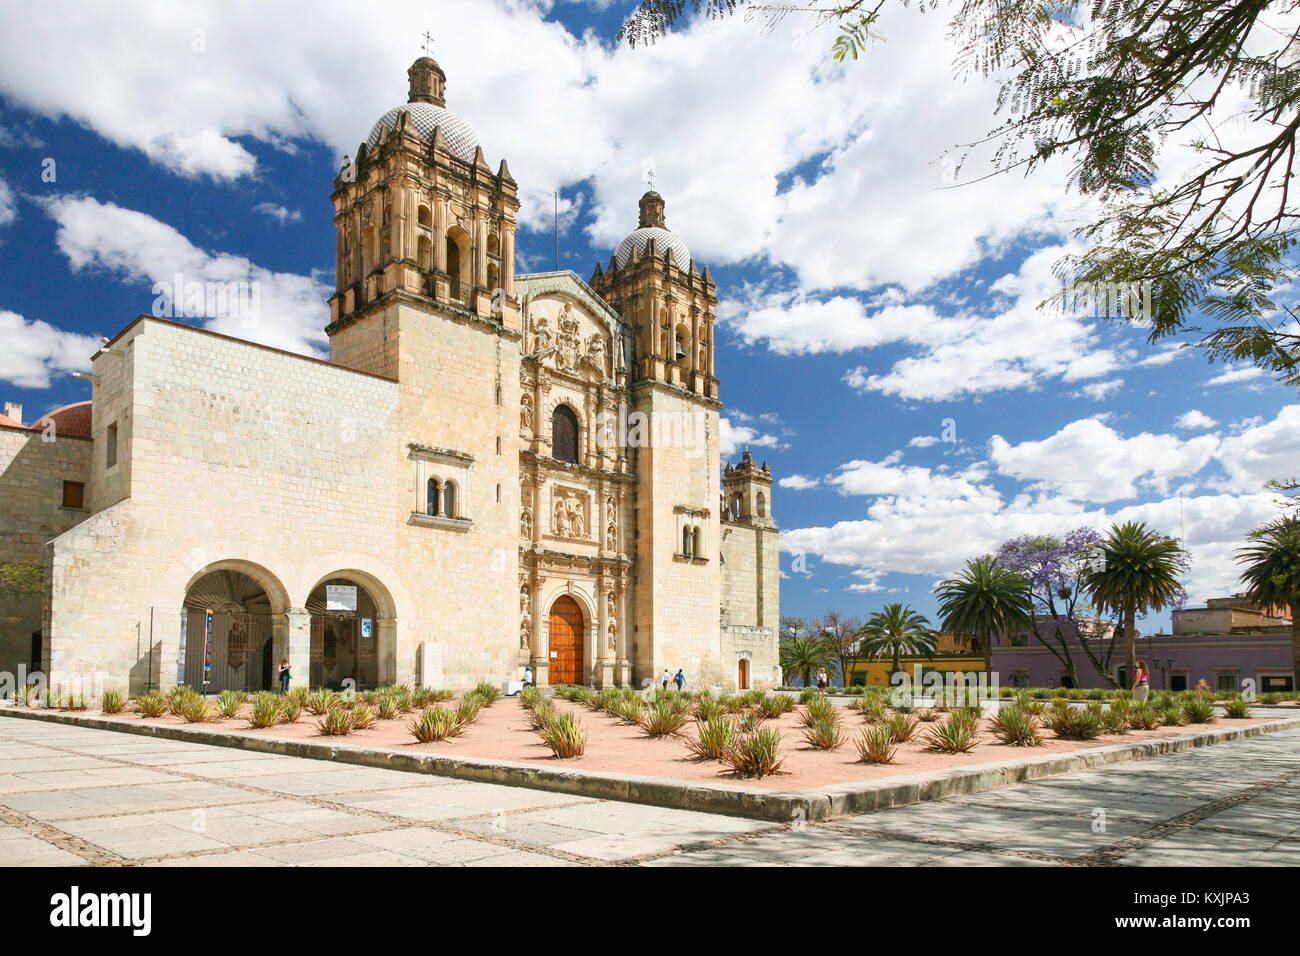 OAXACA, MEXICO - OCT 29TH, 2017: Facade of the Santo Domingo colonial church in Oaxaca, Mexico Stock Photo